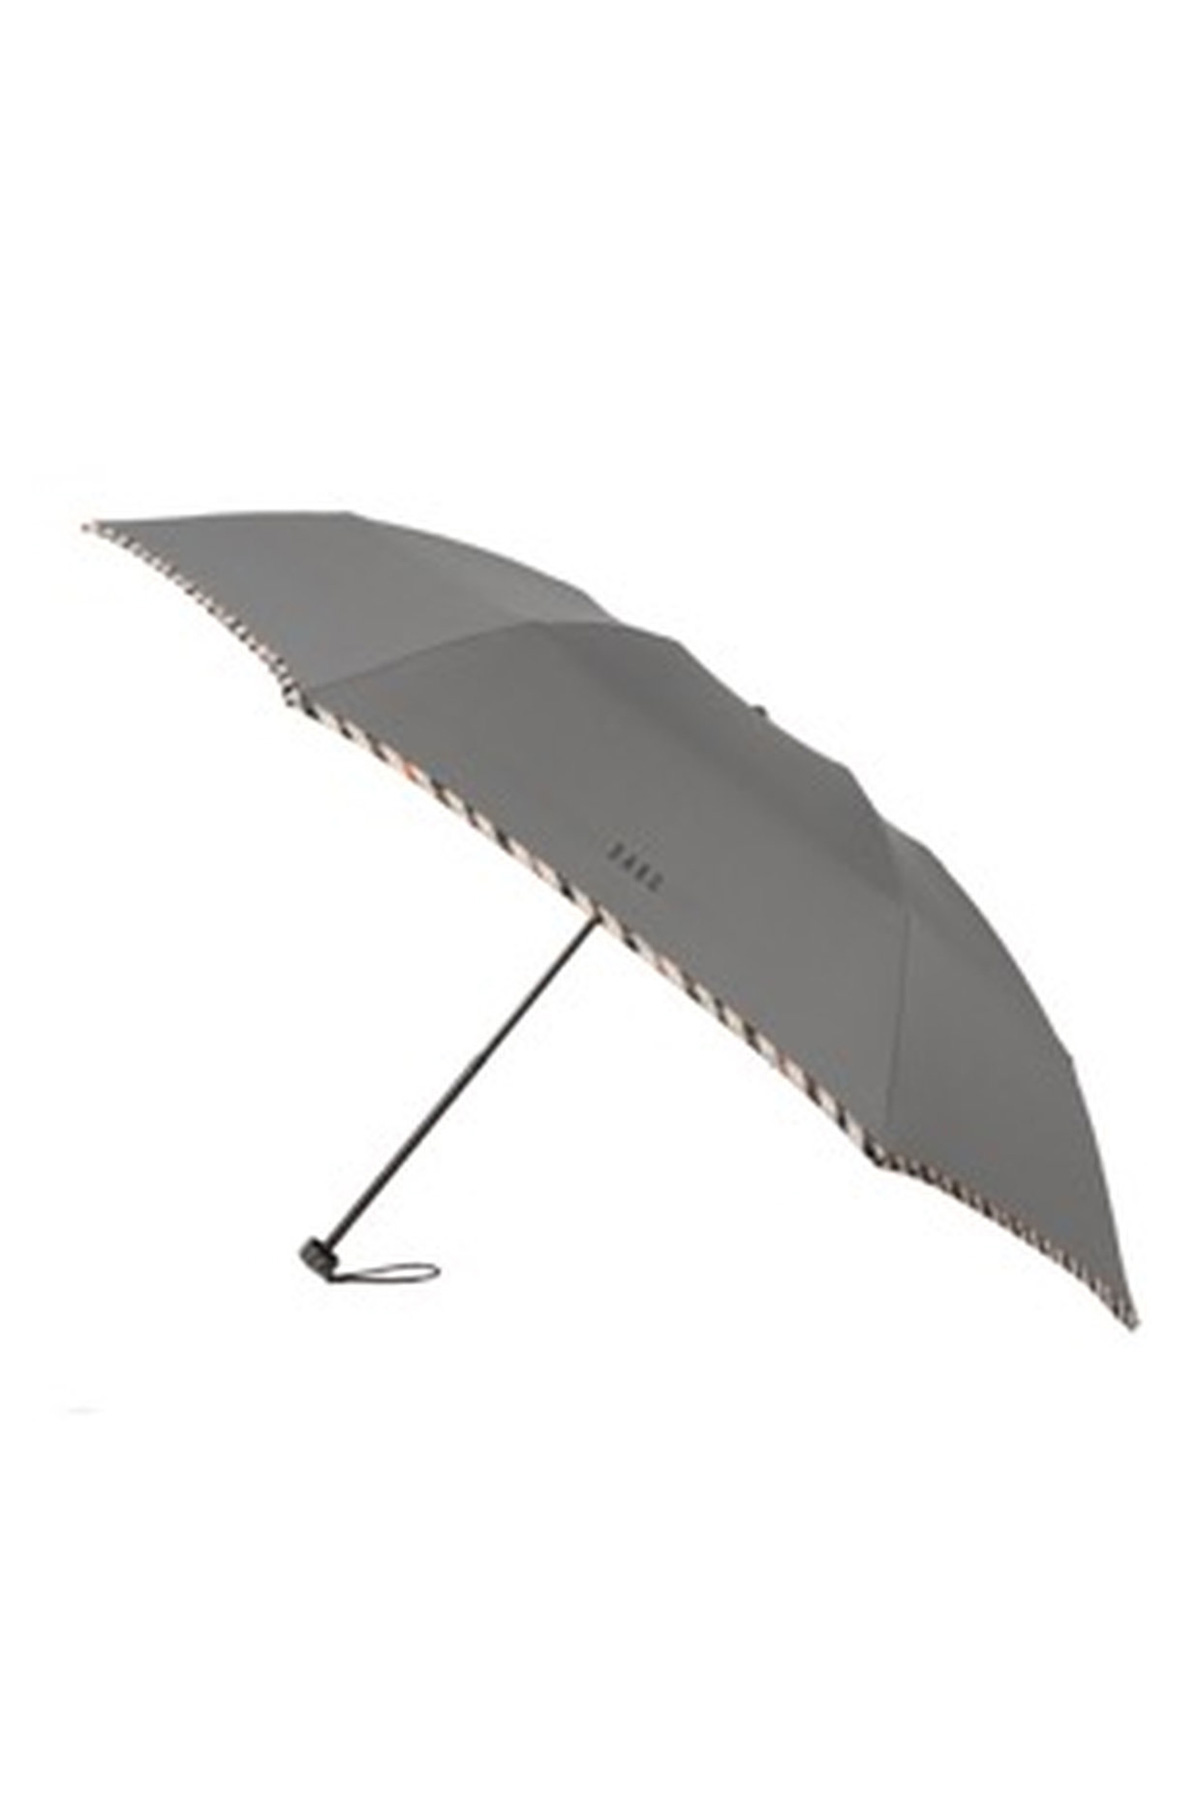 【紳士雨傘】折りたたみ傘無地パイピング 詳細画像 1